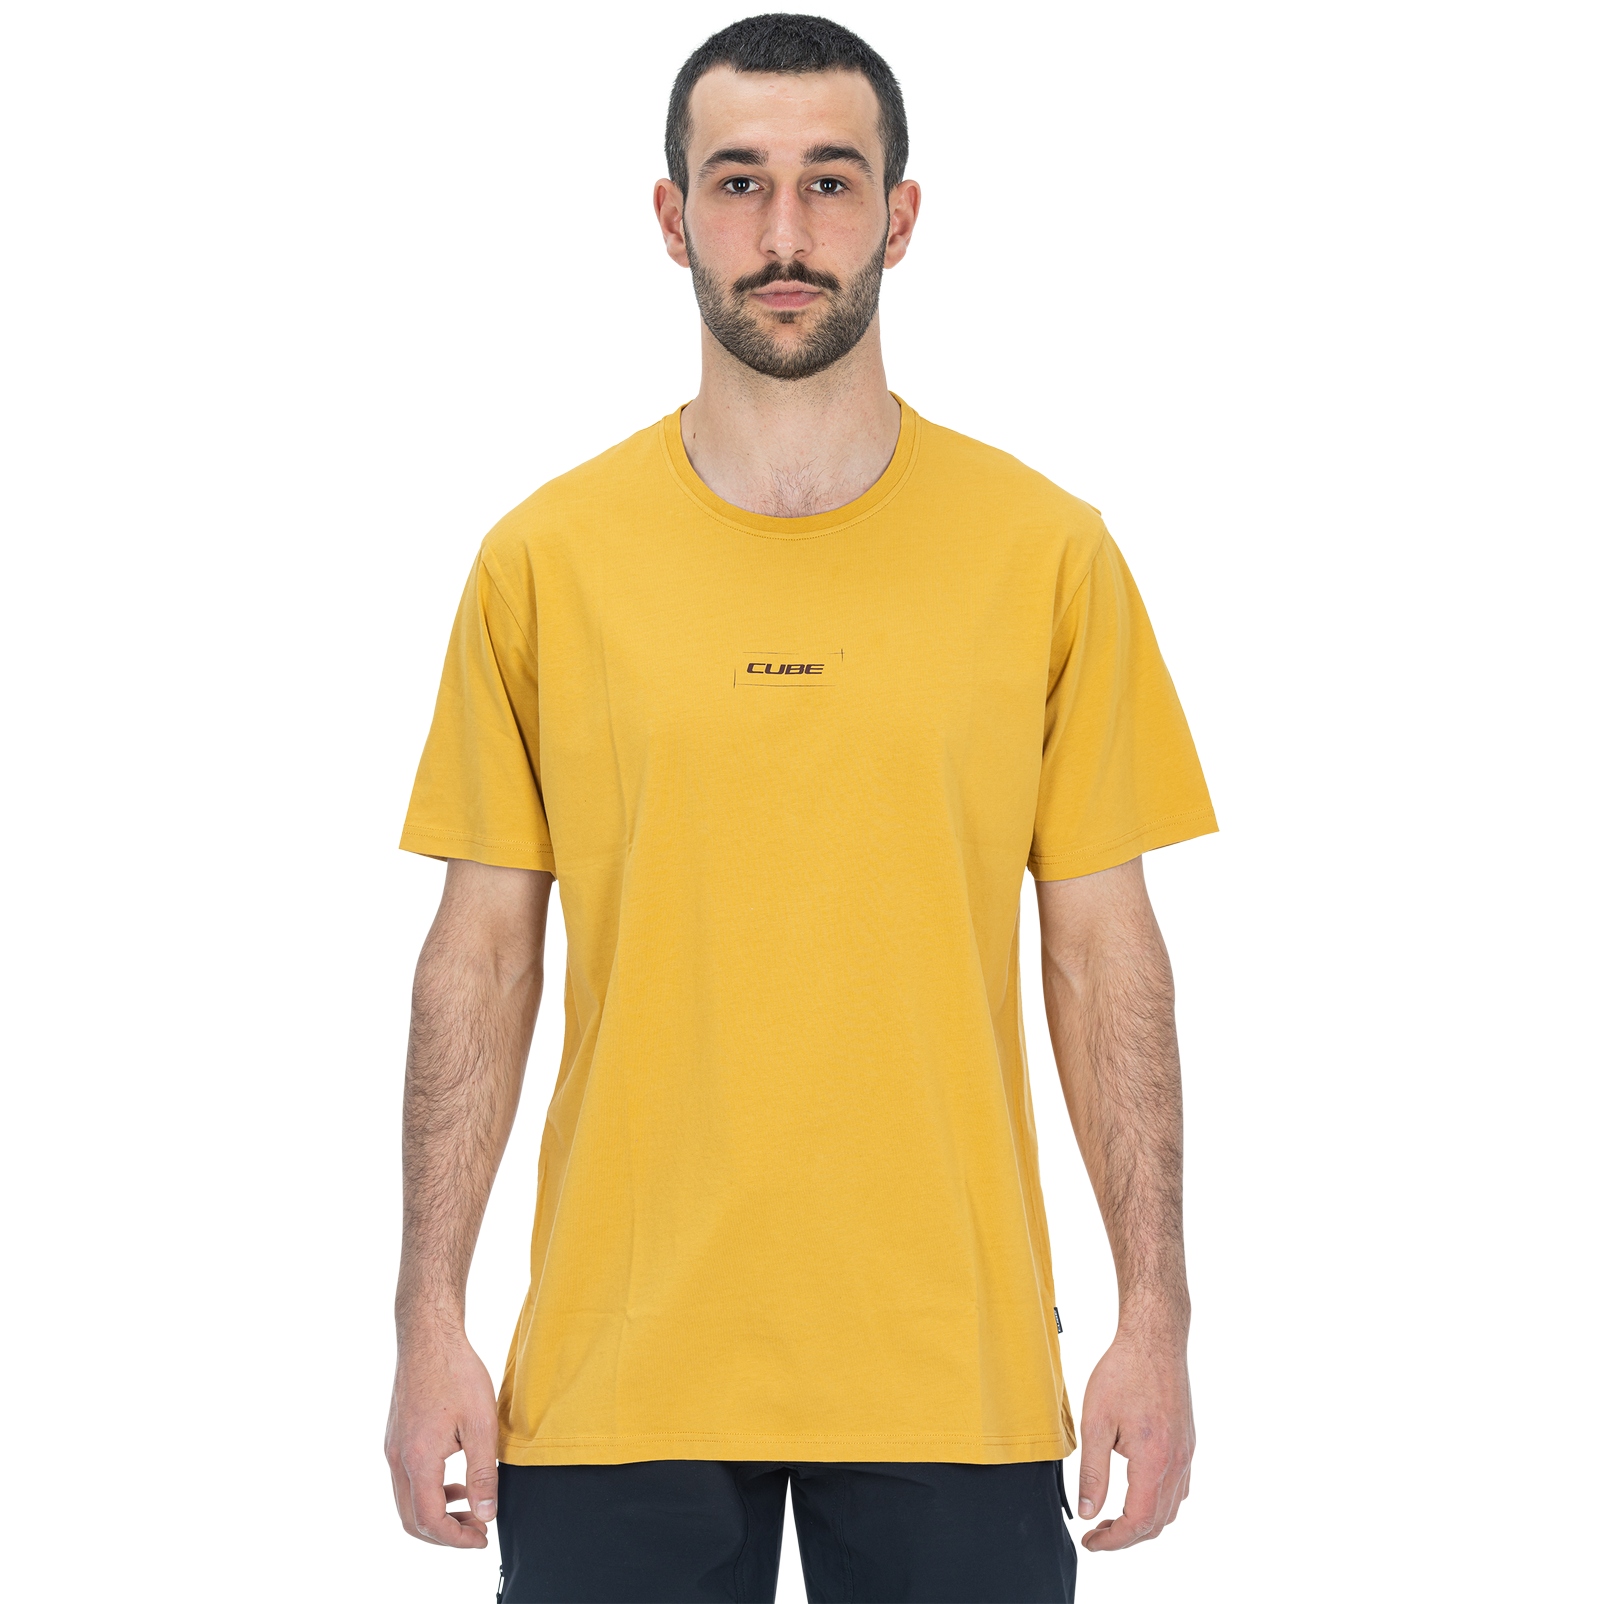 Produktbild von CUBE Organic Hot Dog GTY FIT T-Shirt Herren - gelb